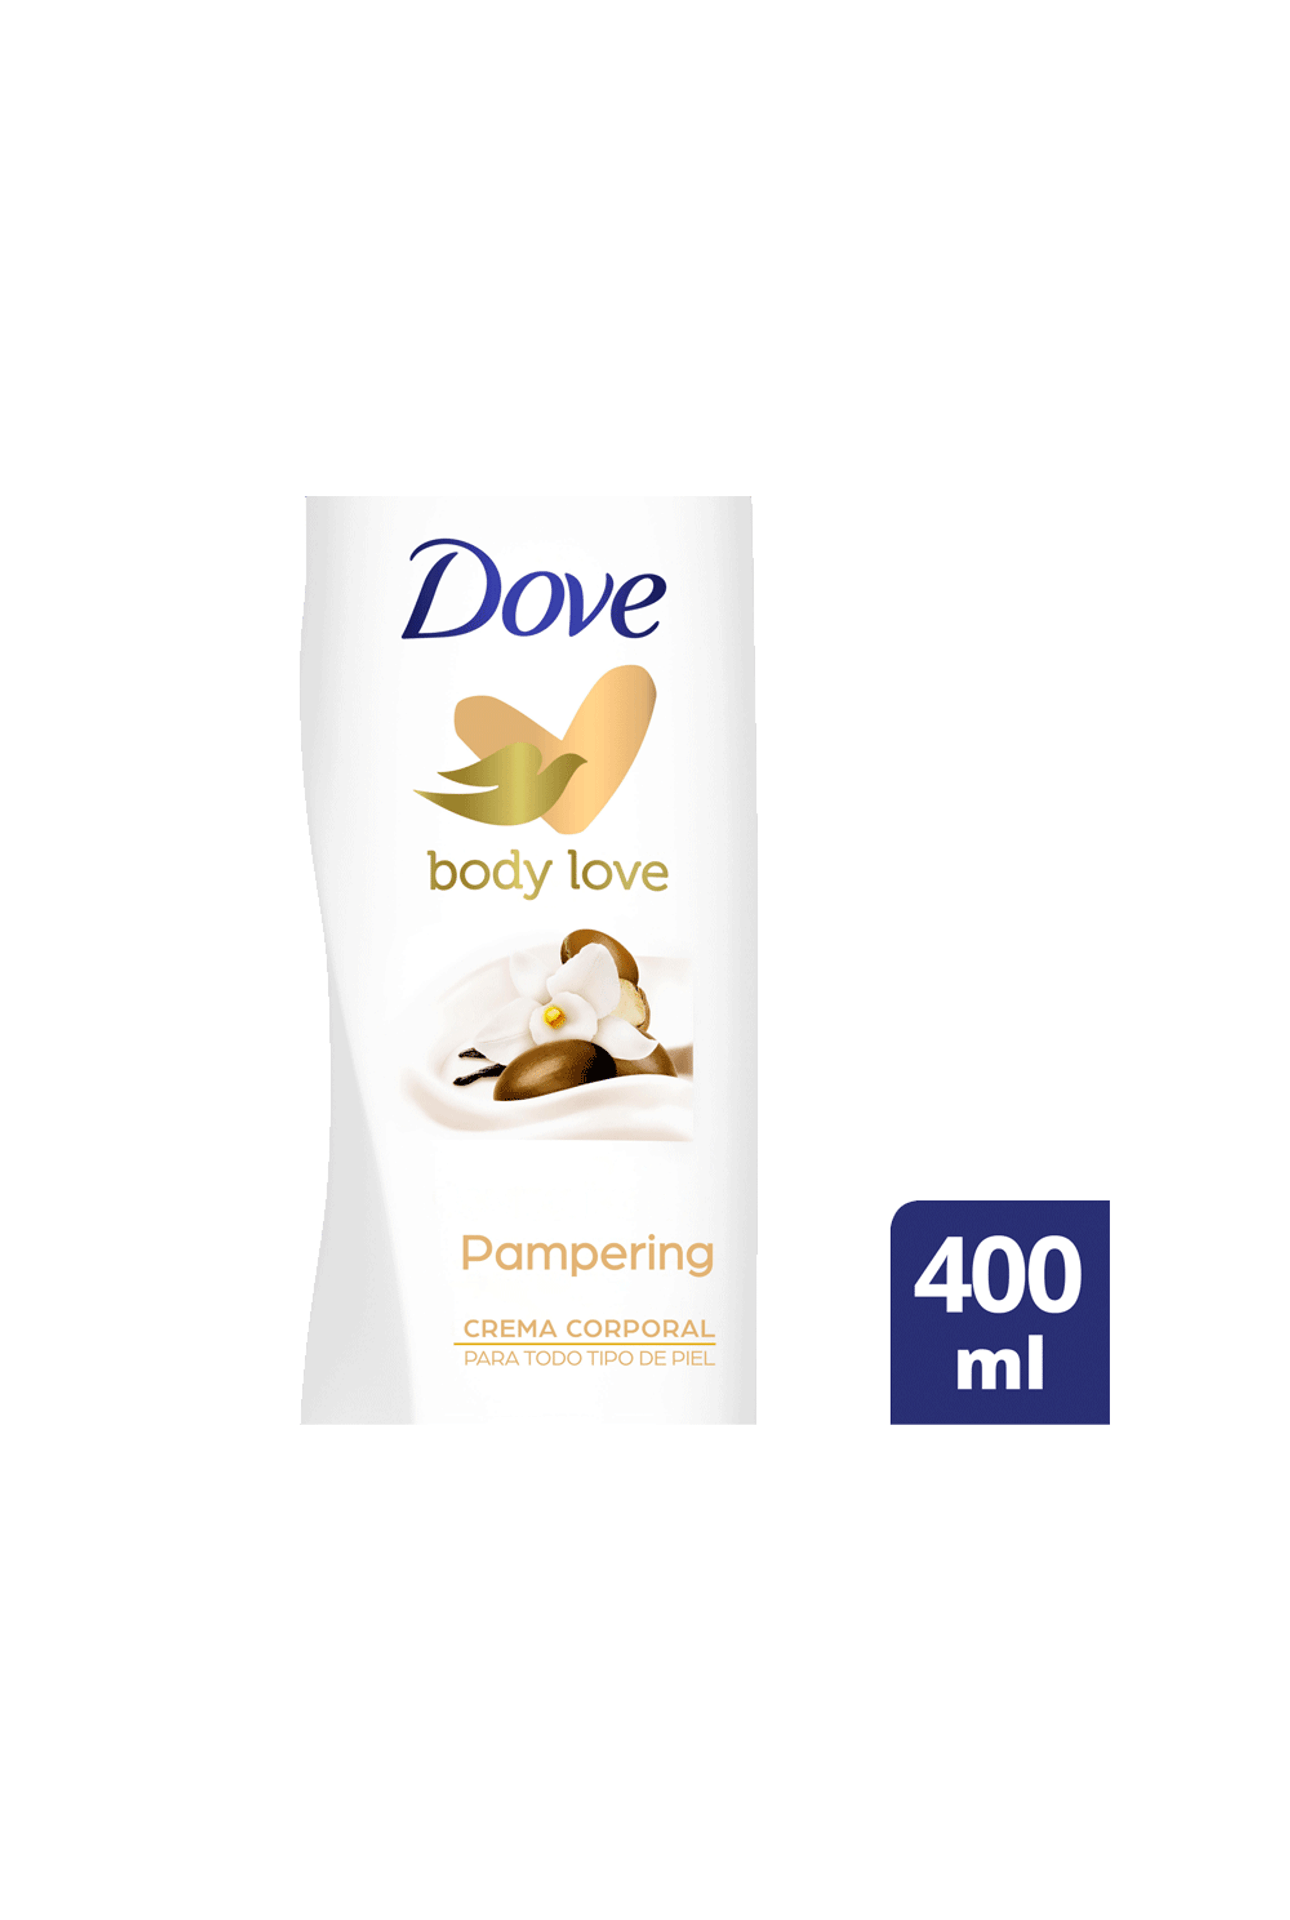 Dove-Crema-Corporal-Dove-Karite-x-400ml-7501056346126_img1